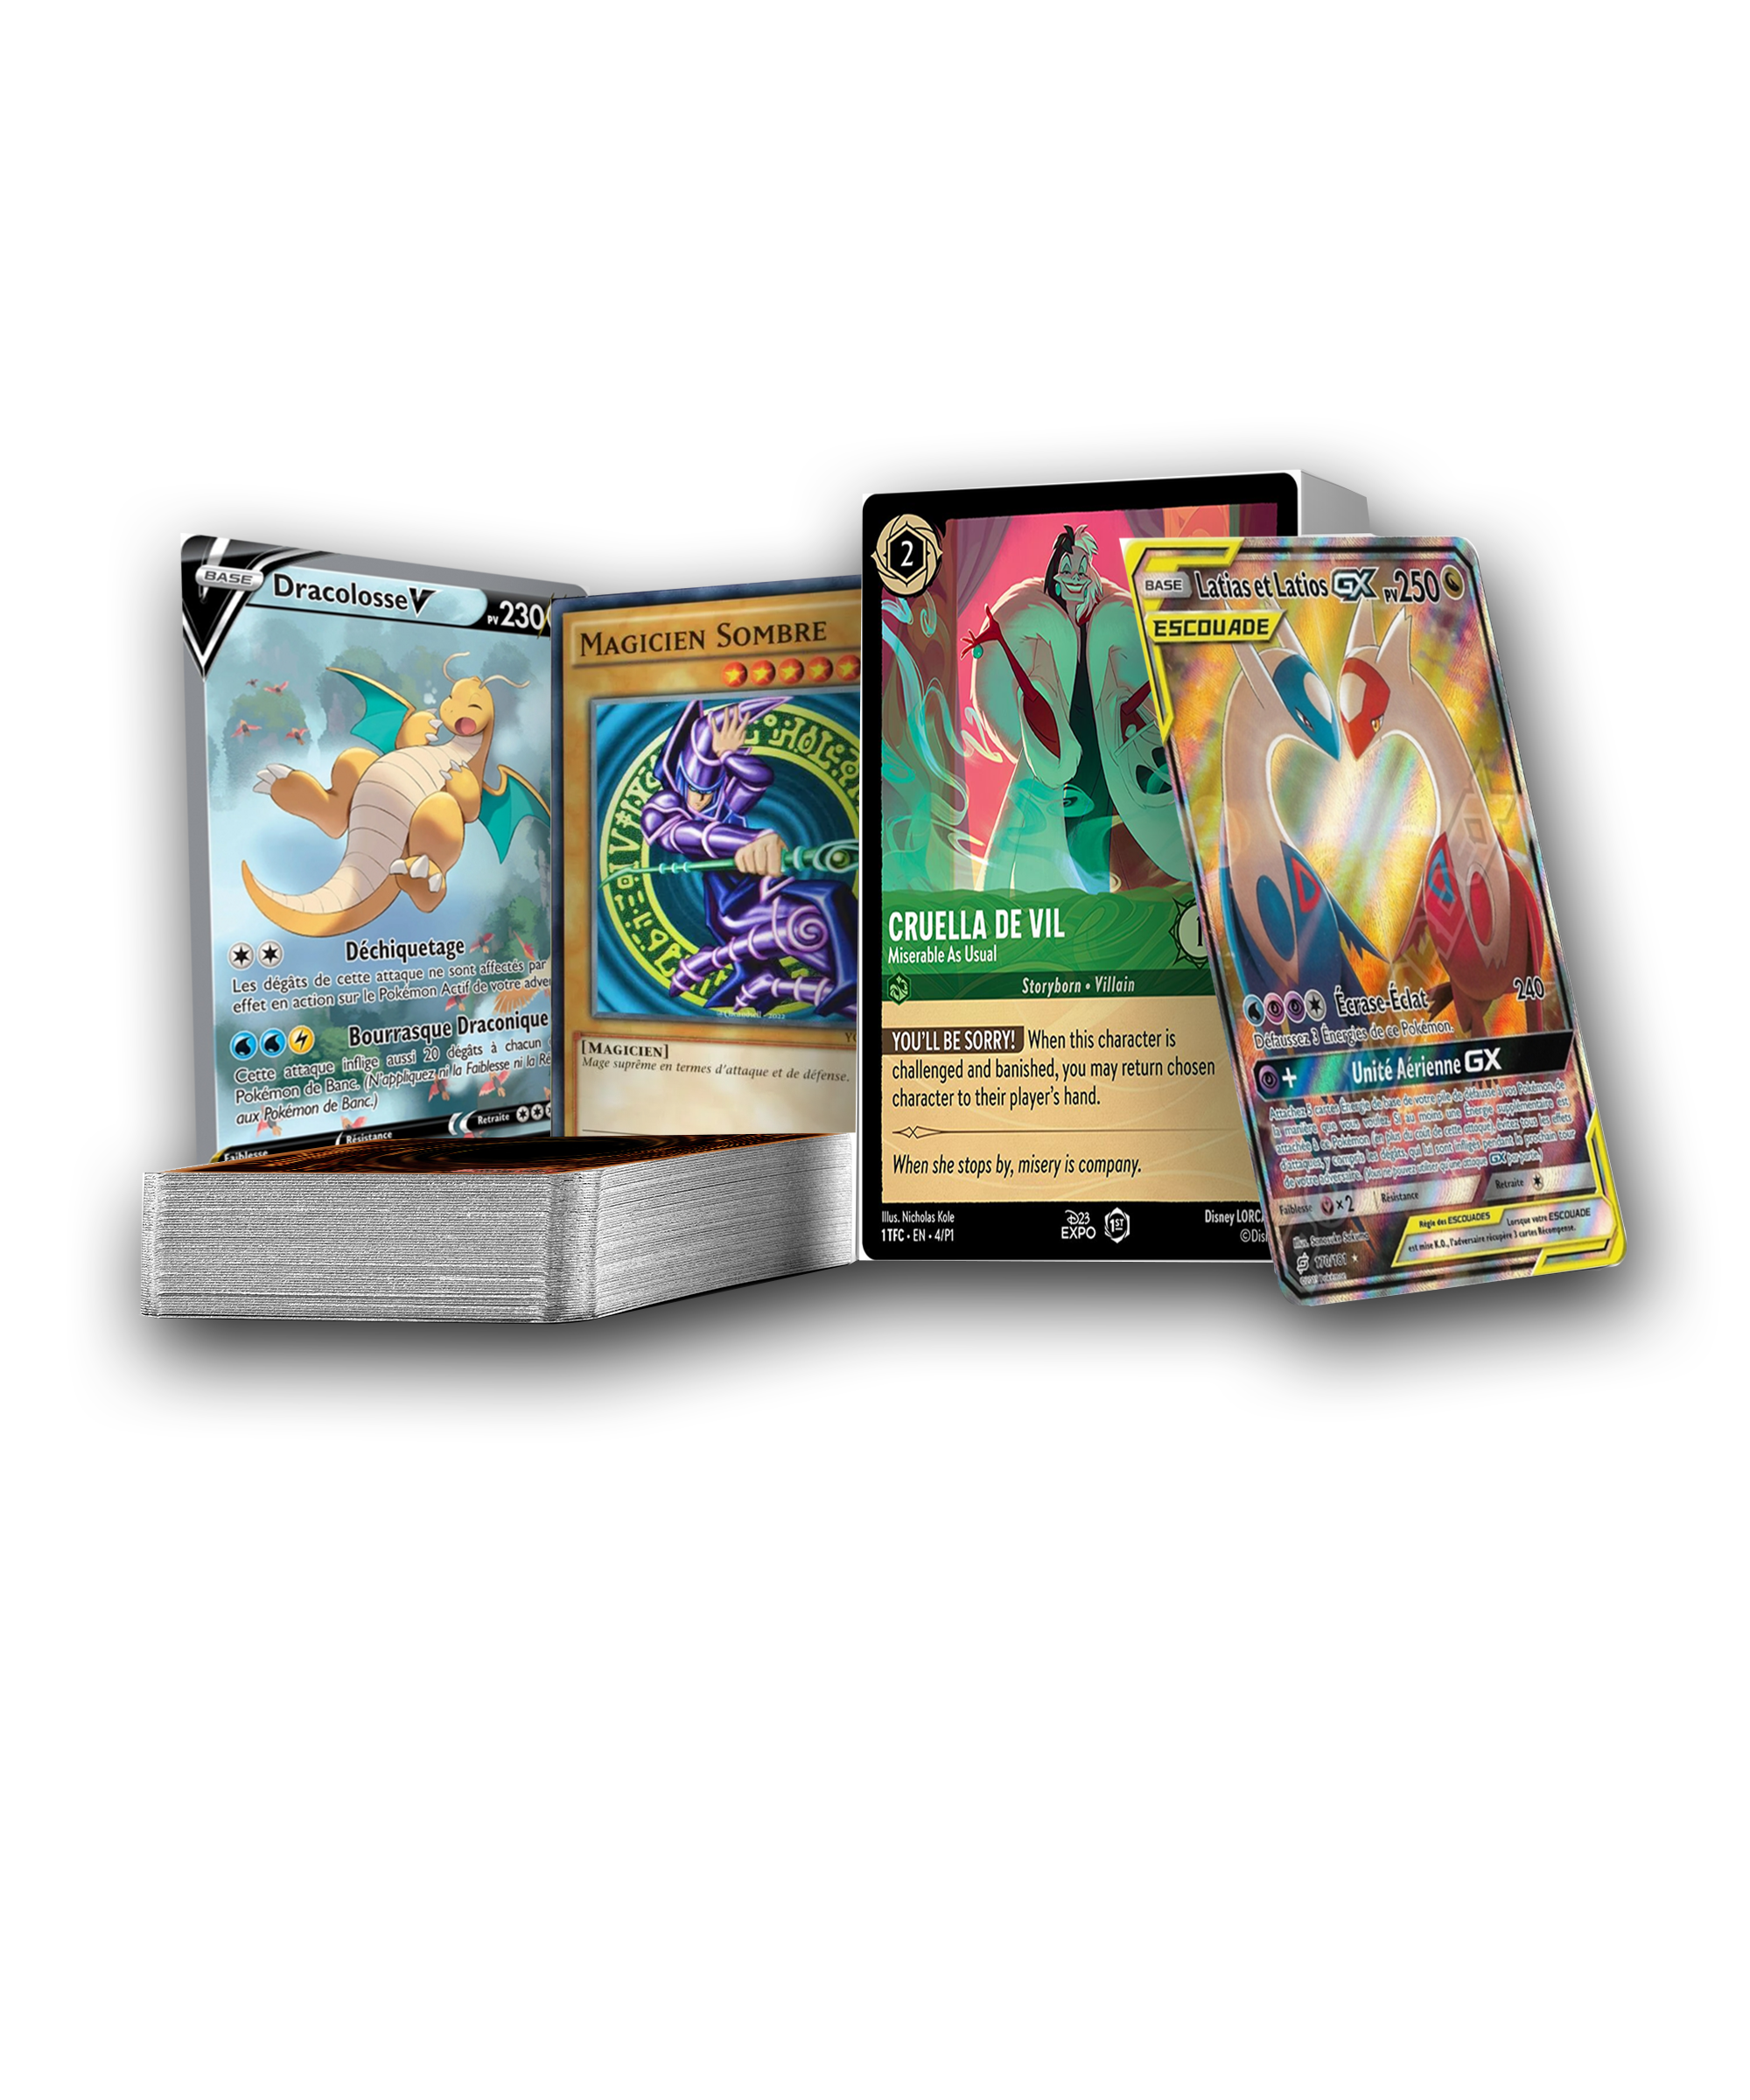 Acheter des Cartes Pokémon Ex - Livraison rapide